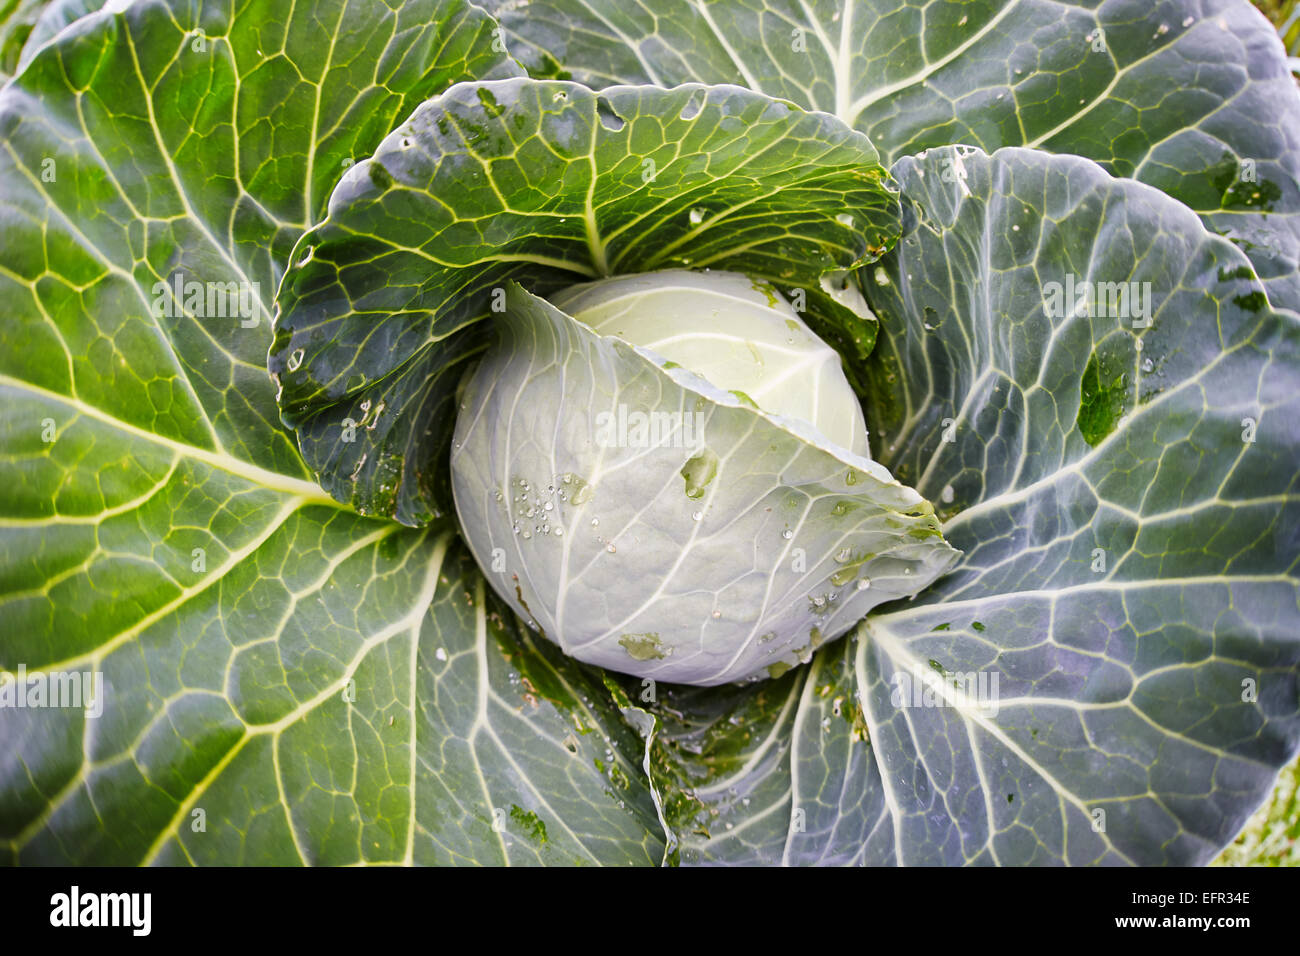 Cerca de coles cultivadas orgánicamente. Nombre científico: Brassica oleracea. Foto de stock